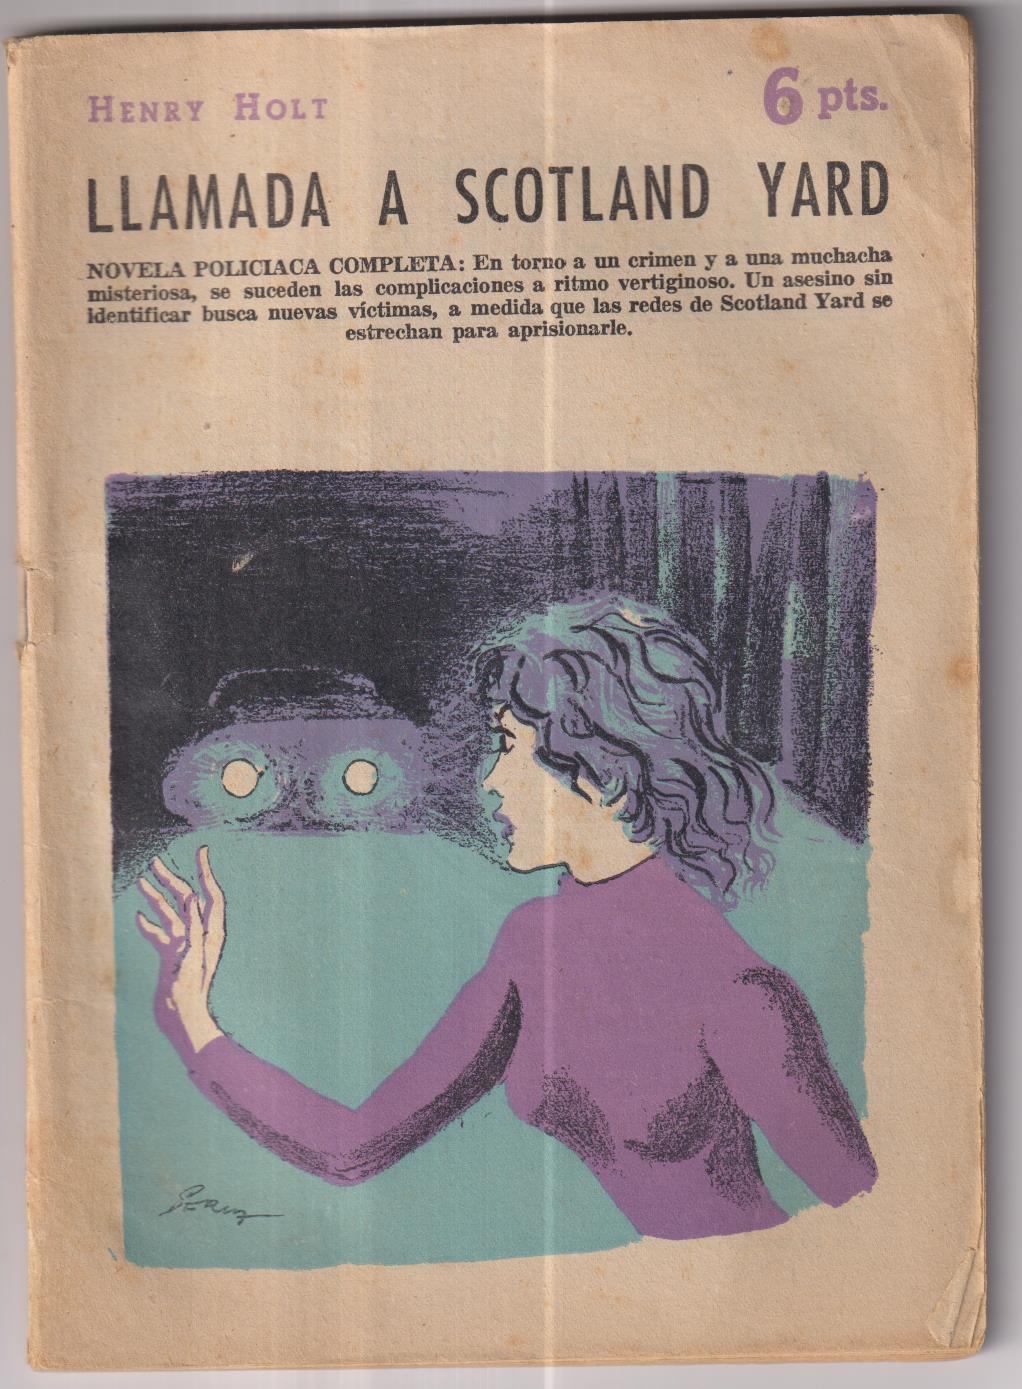 Revista Literaria Novelas y Cuentos nº 1397. Henry Holt. Llamada a Scotland yard, año 1958